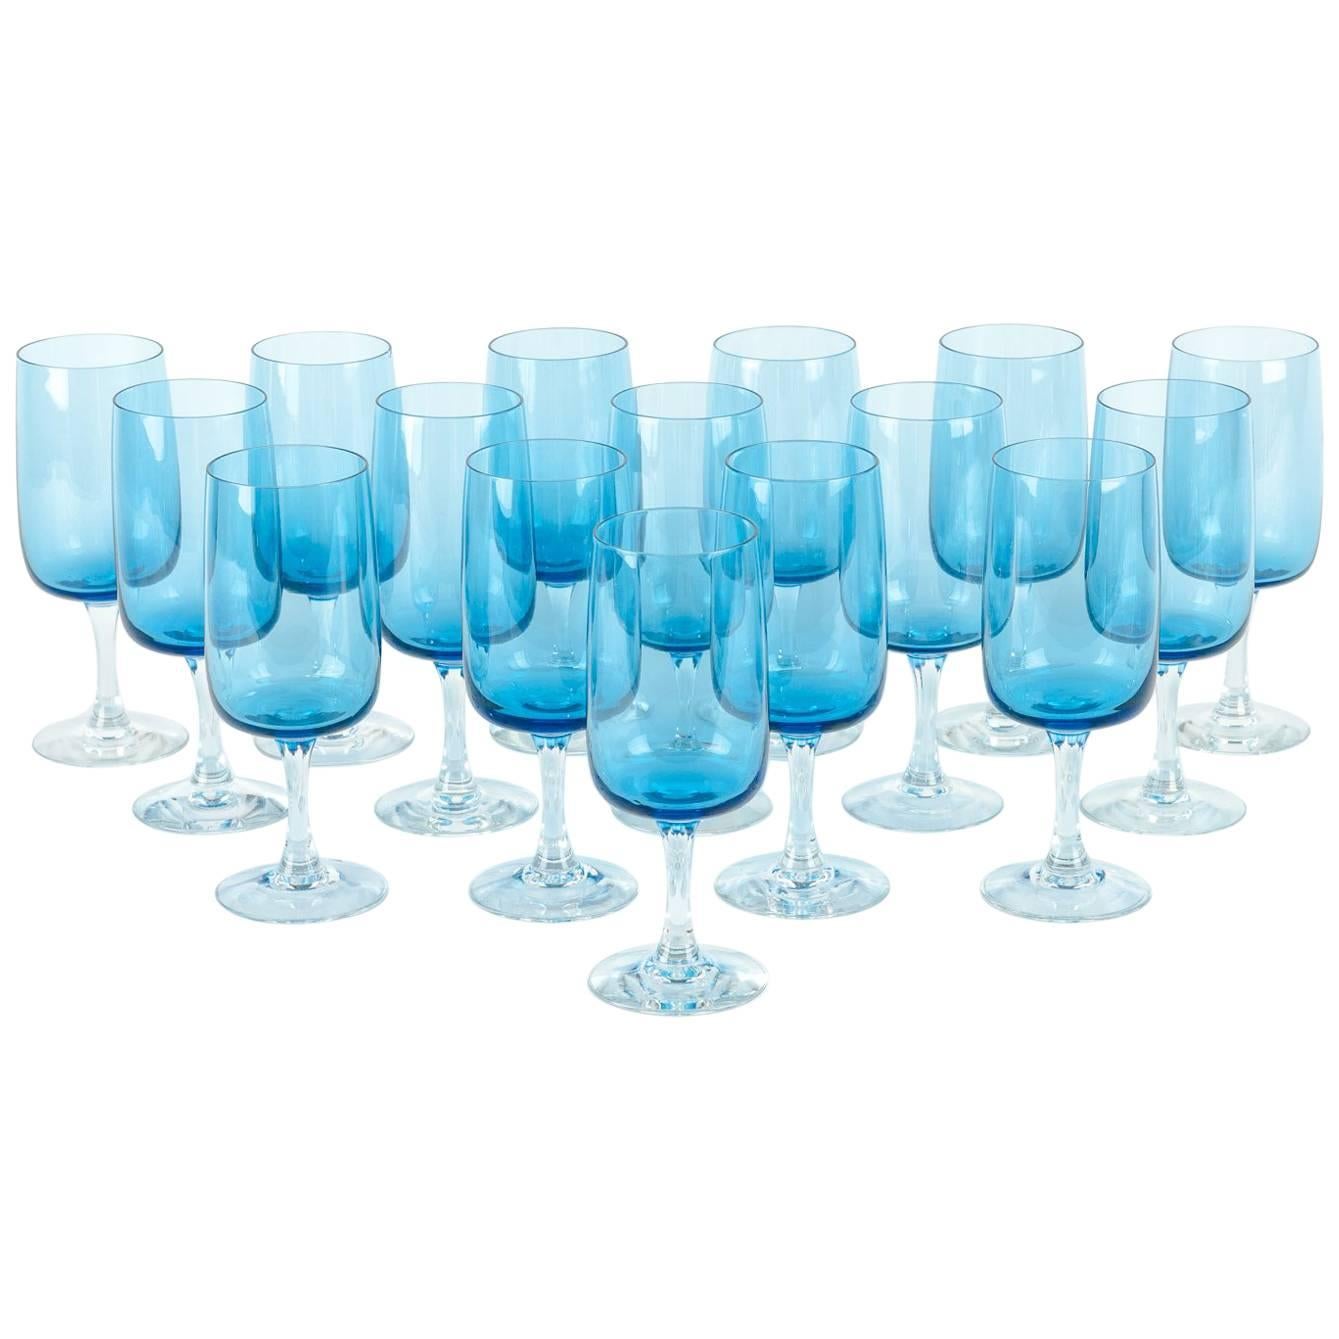 Vintage Crystal Wine / Water Barware Glass Set